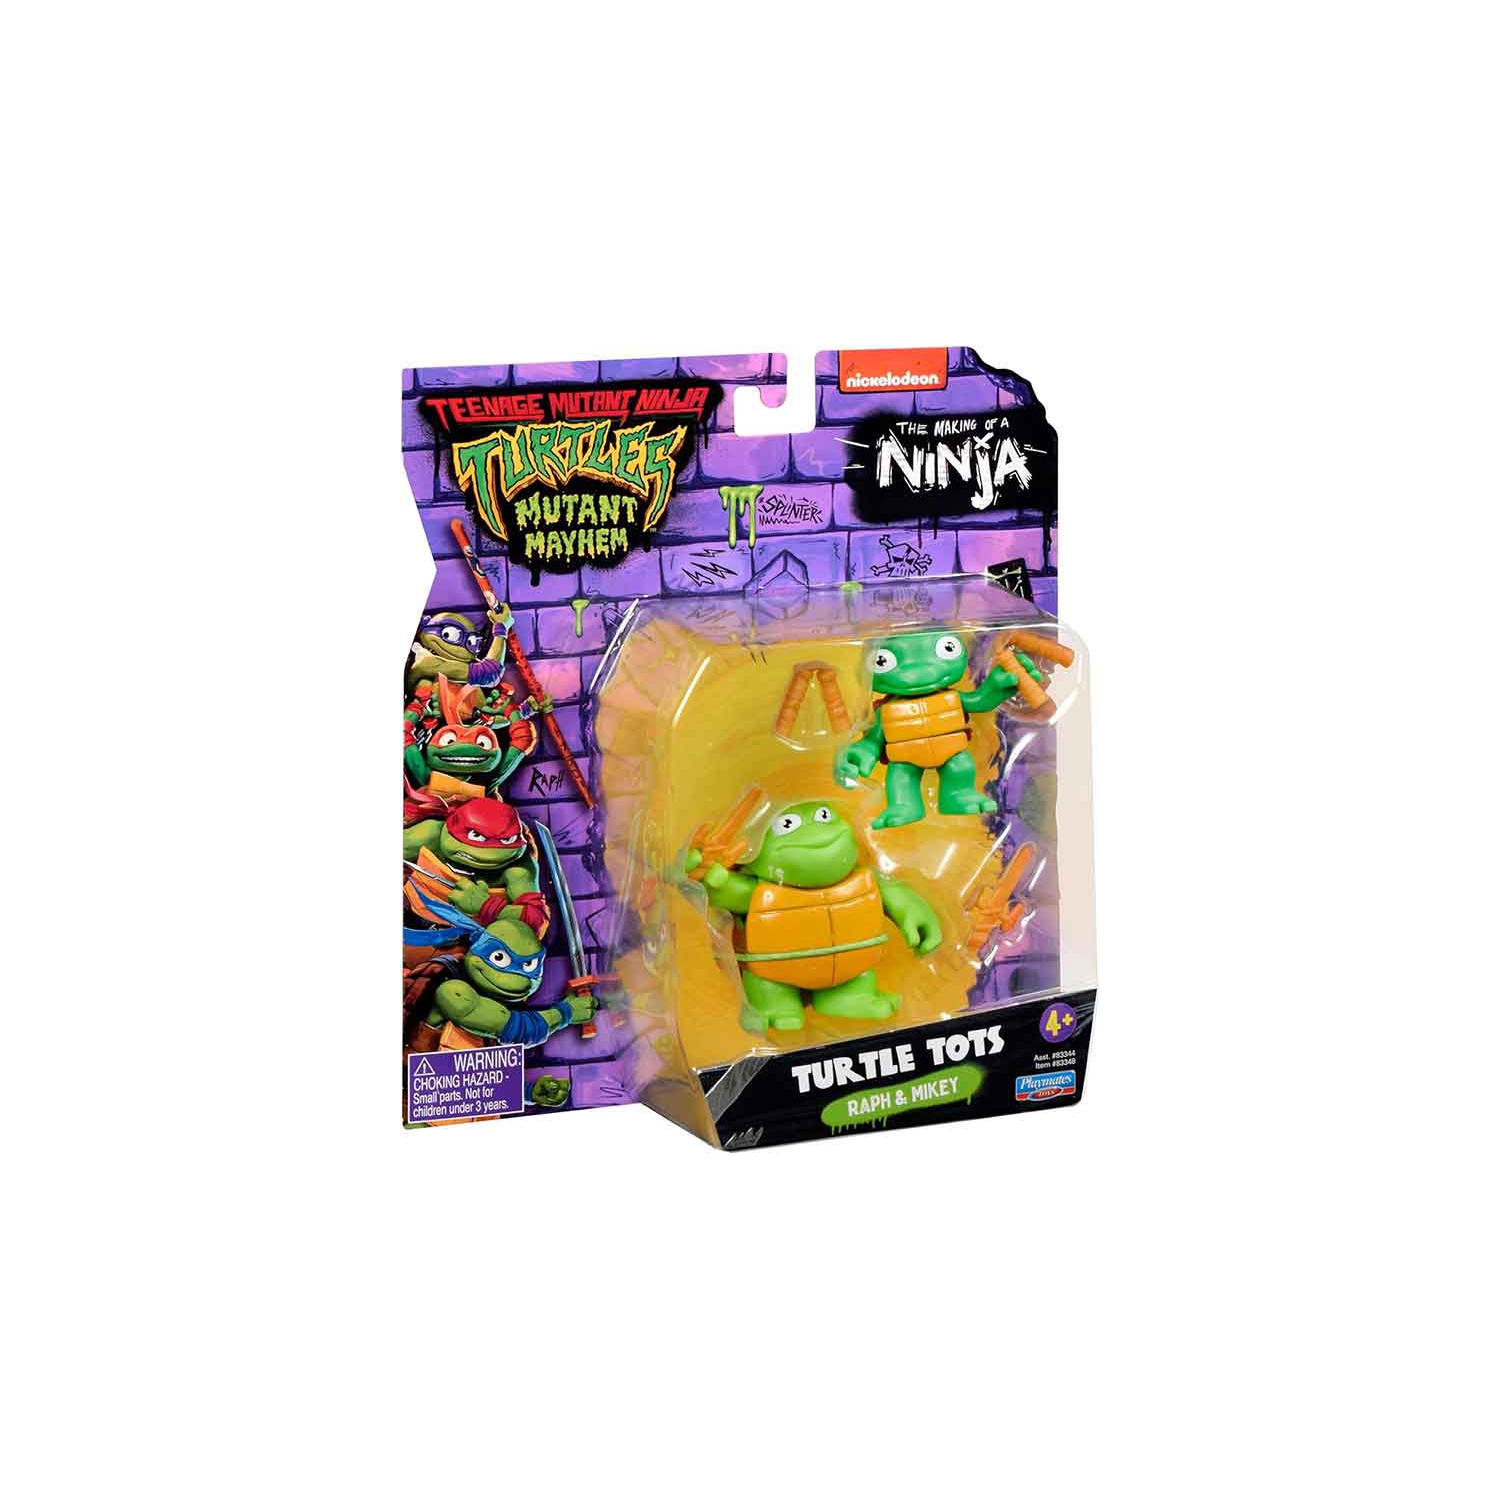 Teenage Mutant Ninja Turtles 5 Inch Action Figure Mutant Mayhem - Turtle Tots Raph & Mikey